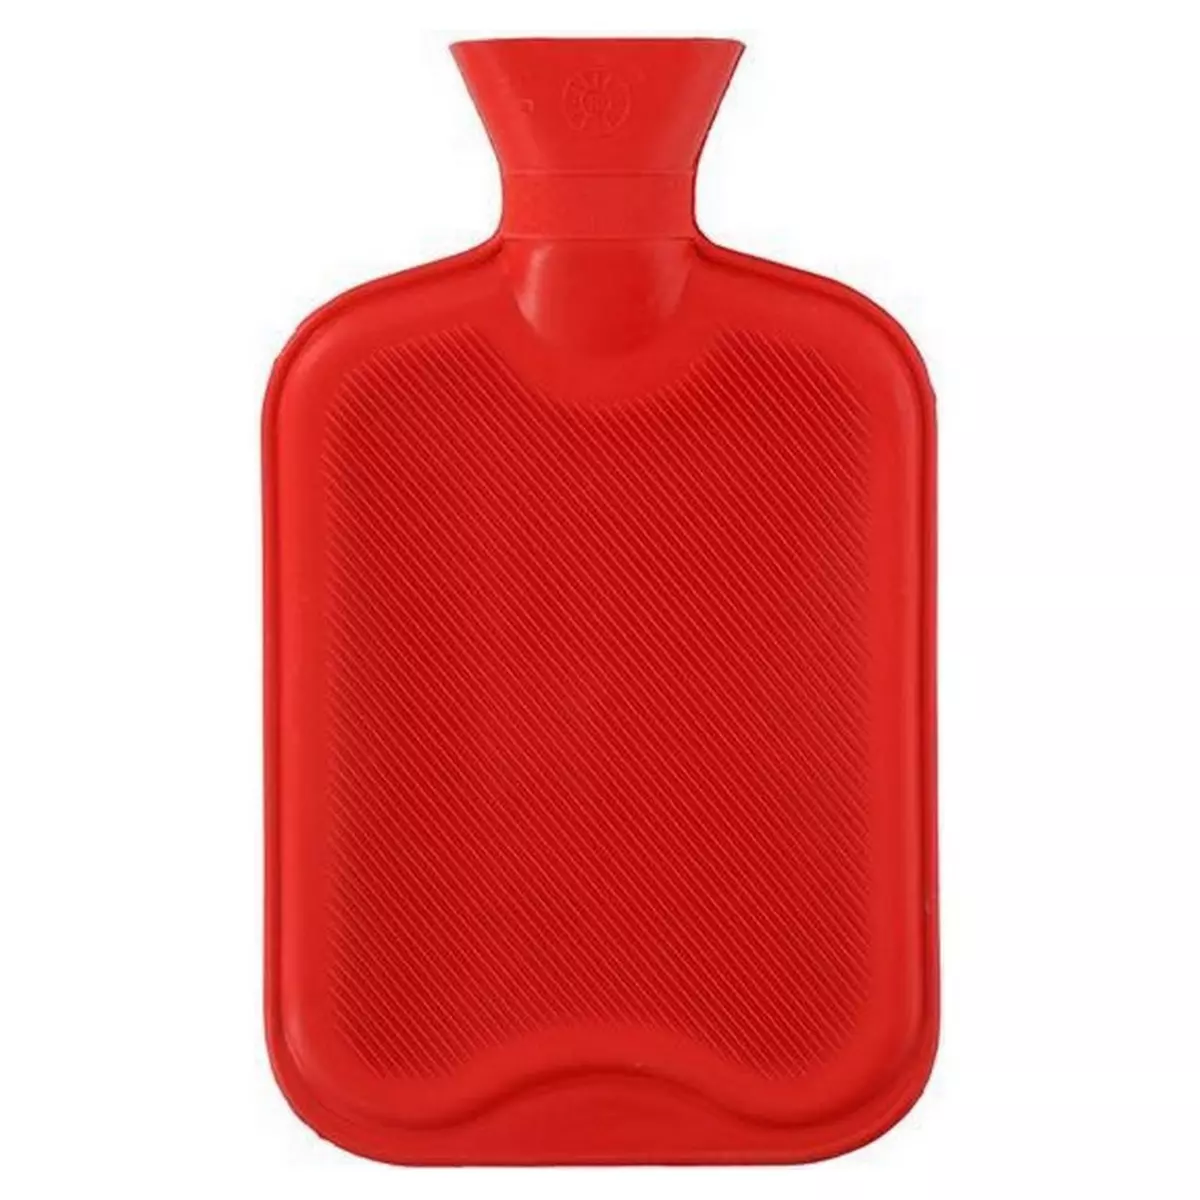  Bouillotte 2 litres rouge Adulte enfant hiver froid eau